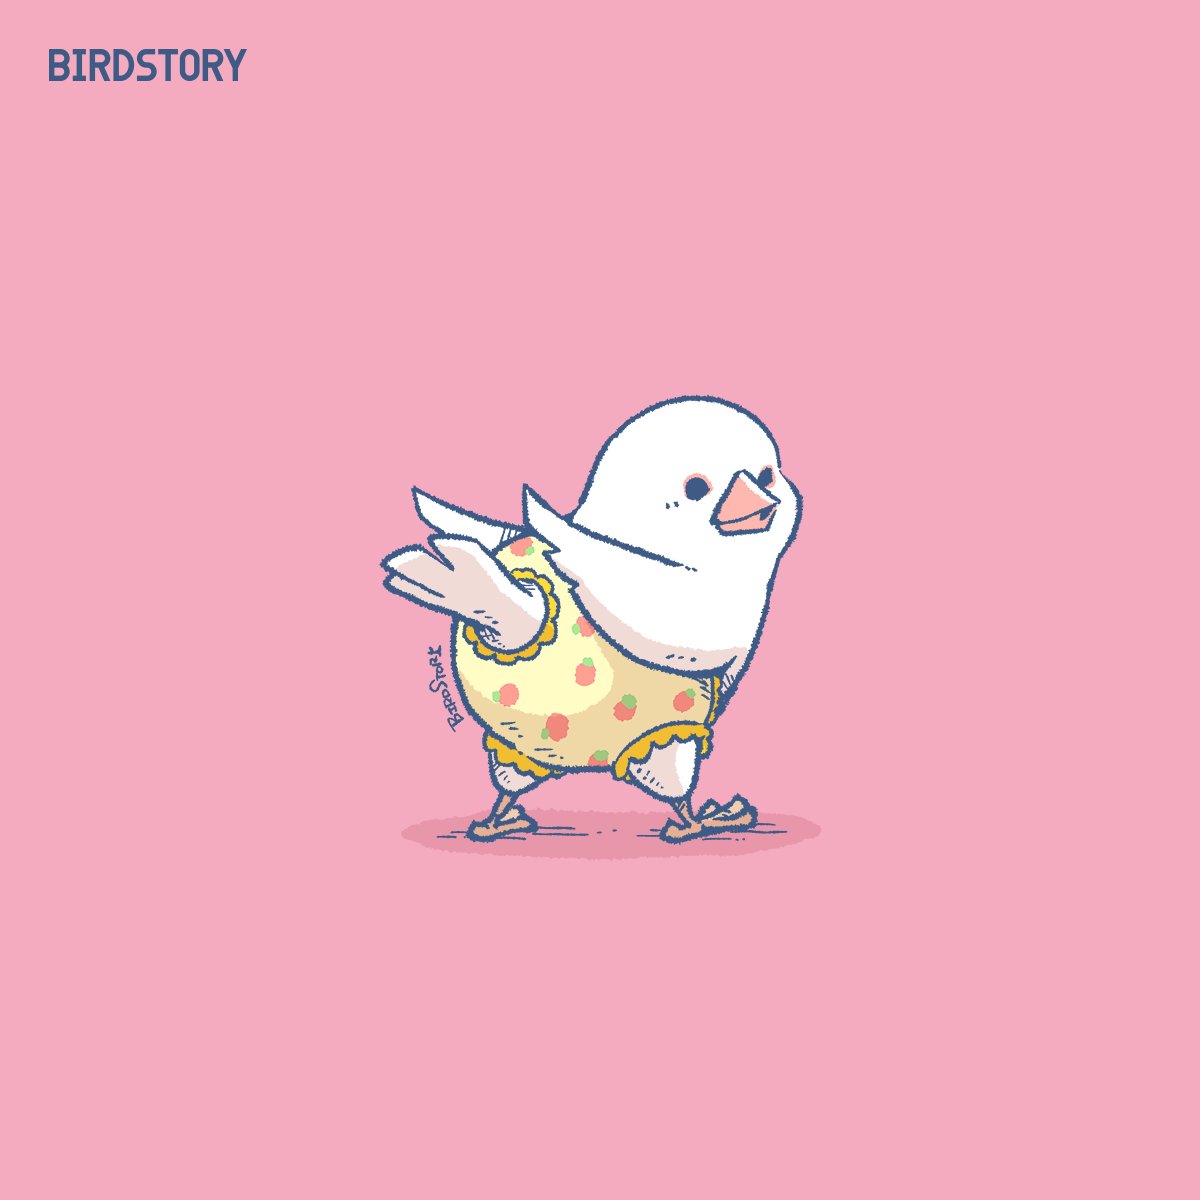 「おはようございます。 本日は8月2日、語呂合わせからパンツの日とのことです #B」|BIRDSTORYのイラスト